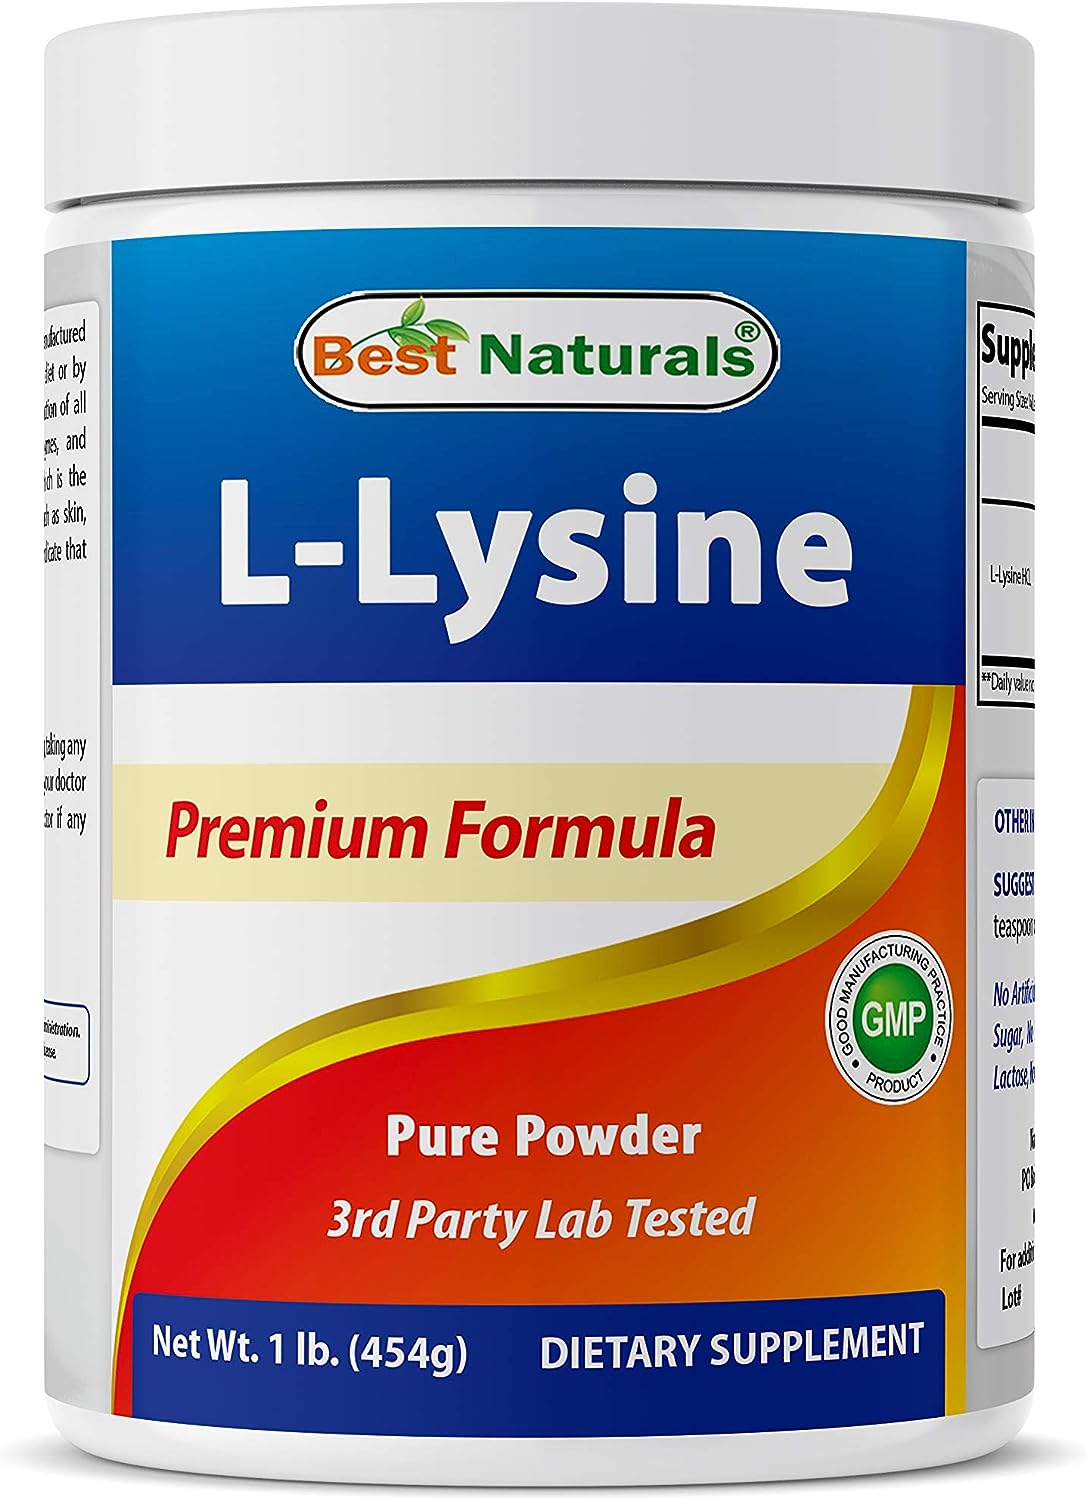 Best Naturals Lysine Powder 454Gr.